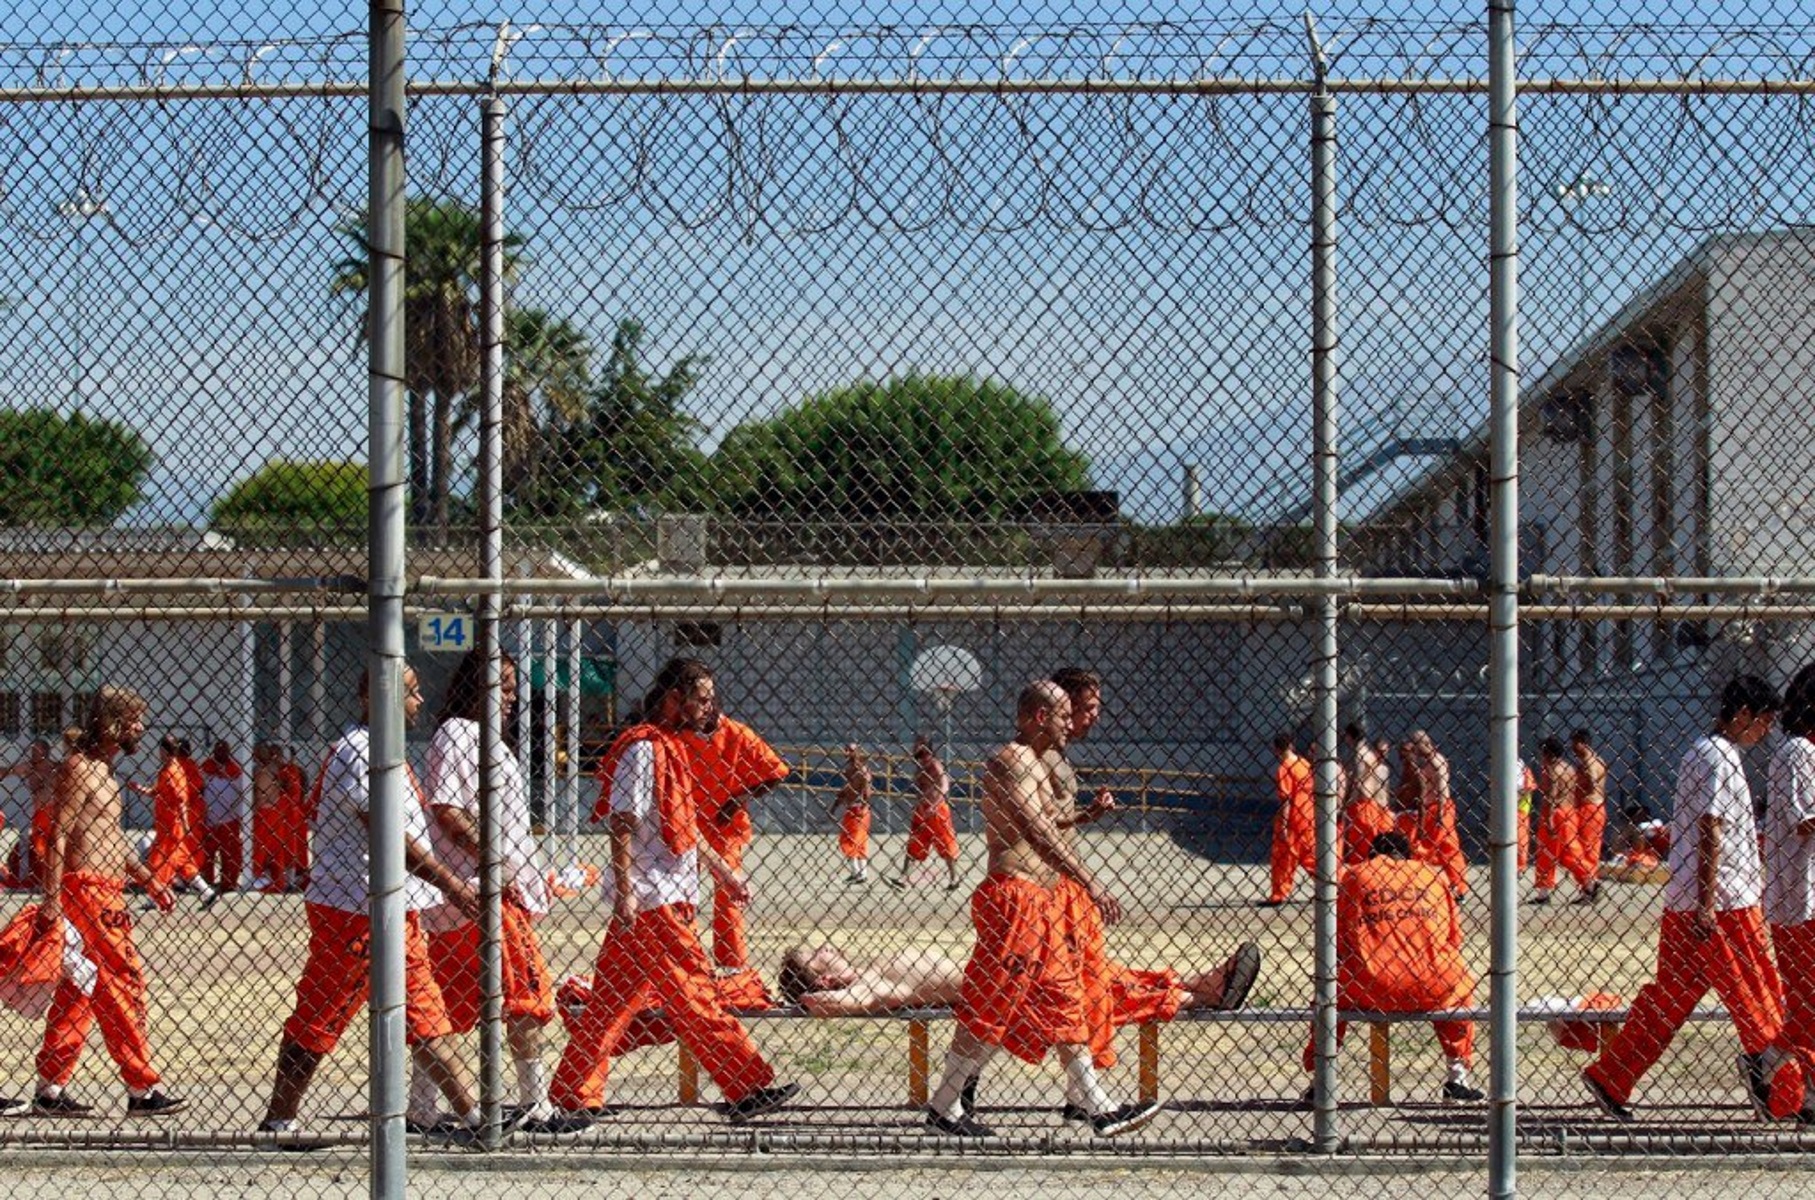 Καλιφόρνια: Τέλος στις ιδιωτικές φυλακές και στα ιδιωτικά κέντρα κράτησης παράτυπων μεταναστών